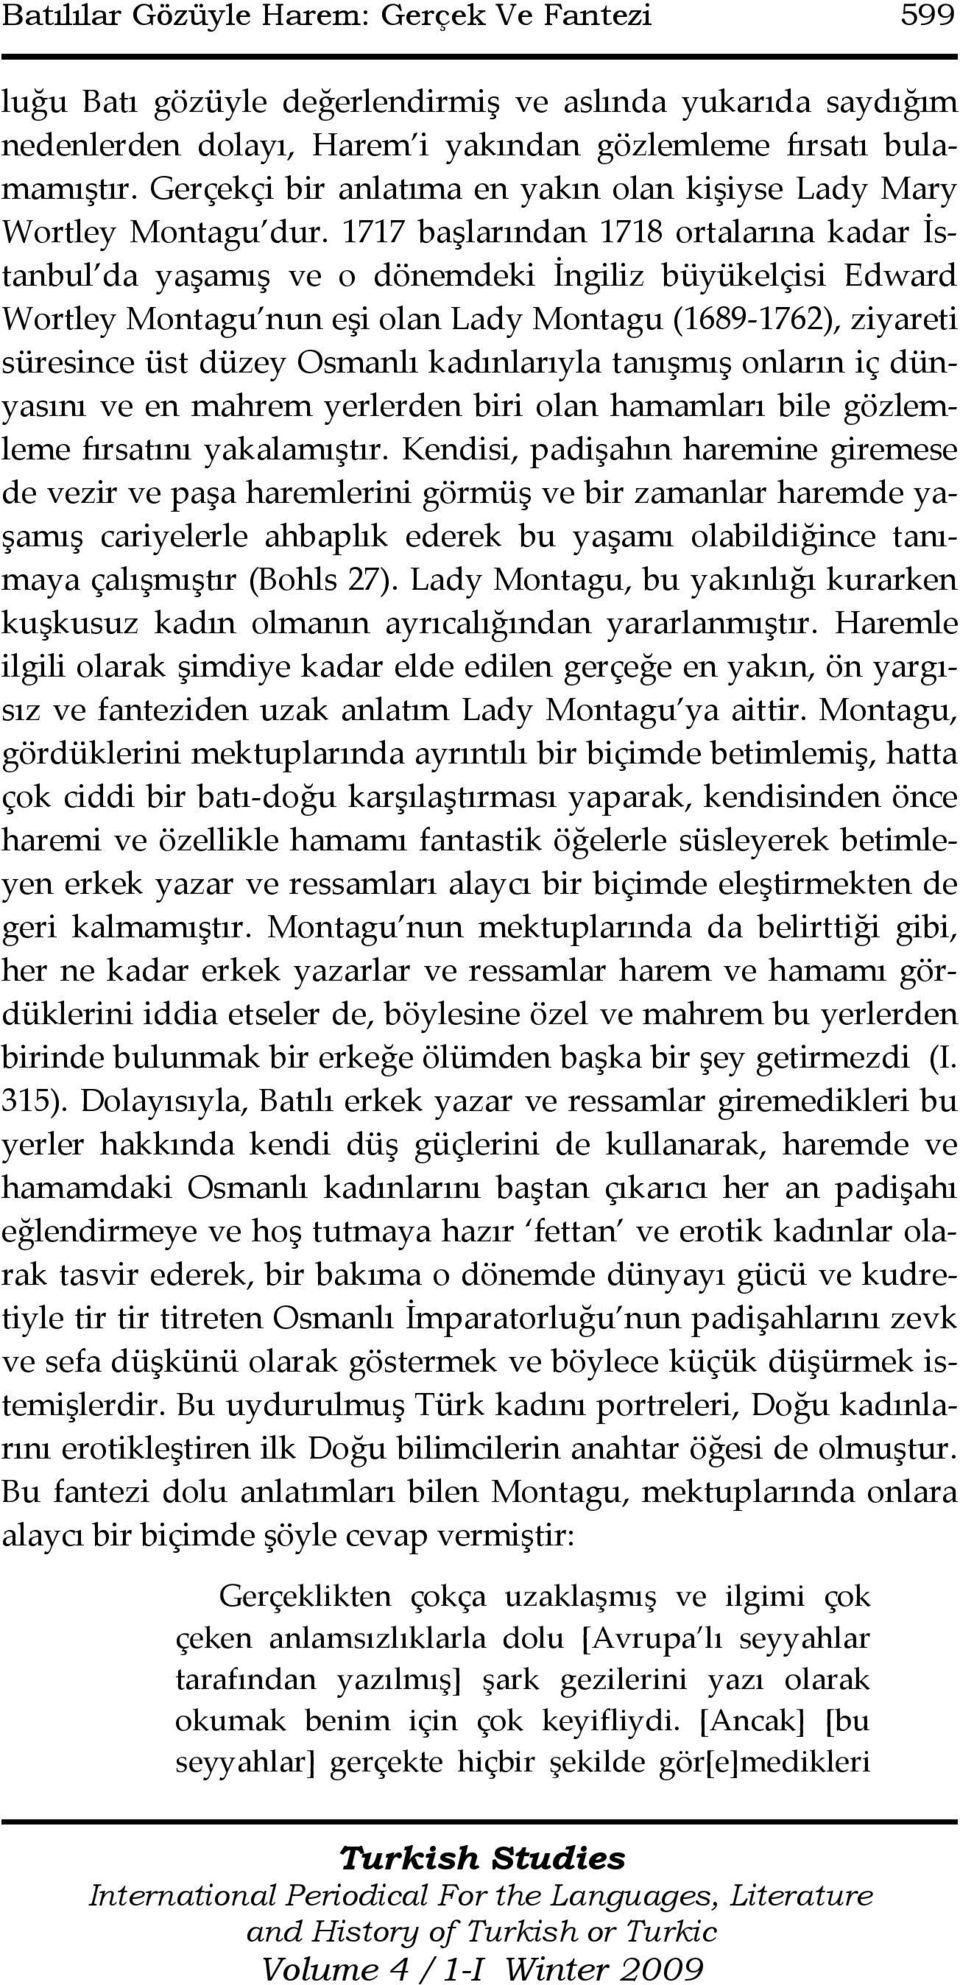 1717 başlarından 1718 ortalarına kadar İstanbul da yaşamış ve o dönemdeki İngiliz büyükelçisi Edward Wortley Montagu nun eşi olan Lady Montagu (1689-1762), ziyareti süresince üst düzey Osmanlı